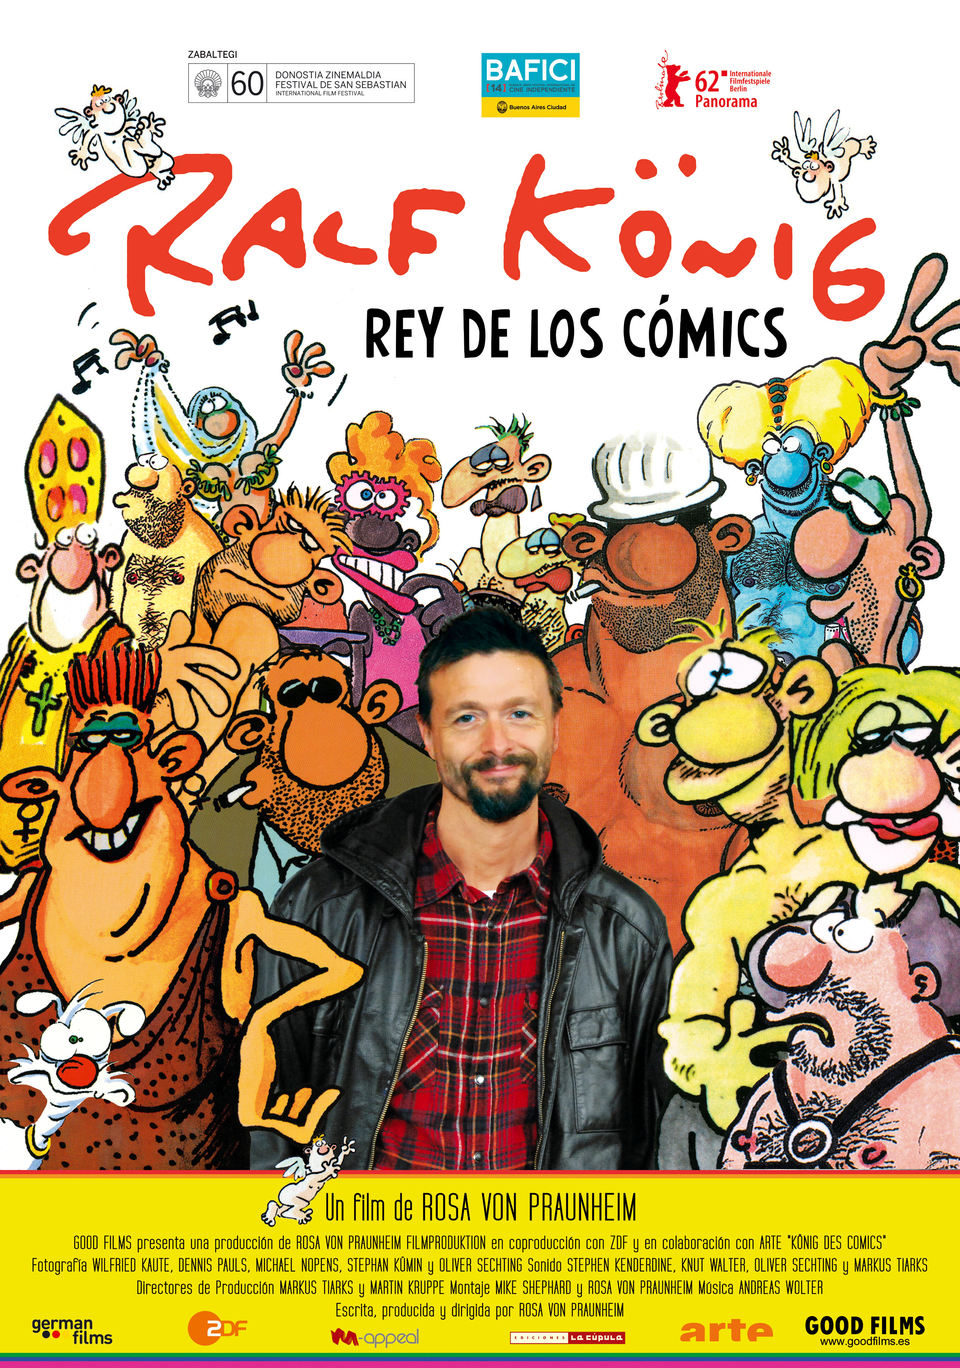 Cartel de Ralf König, el rey de los cómics - España